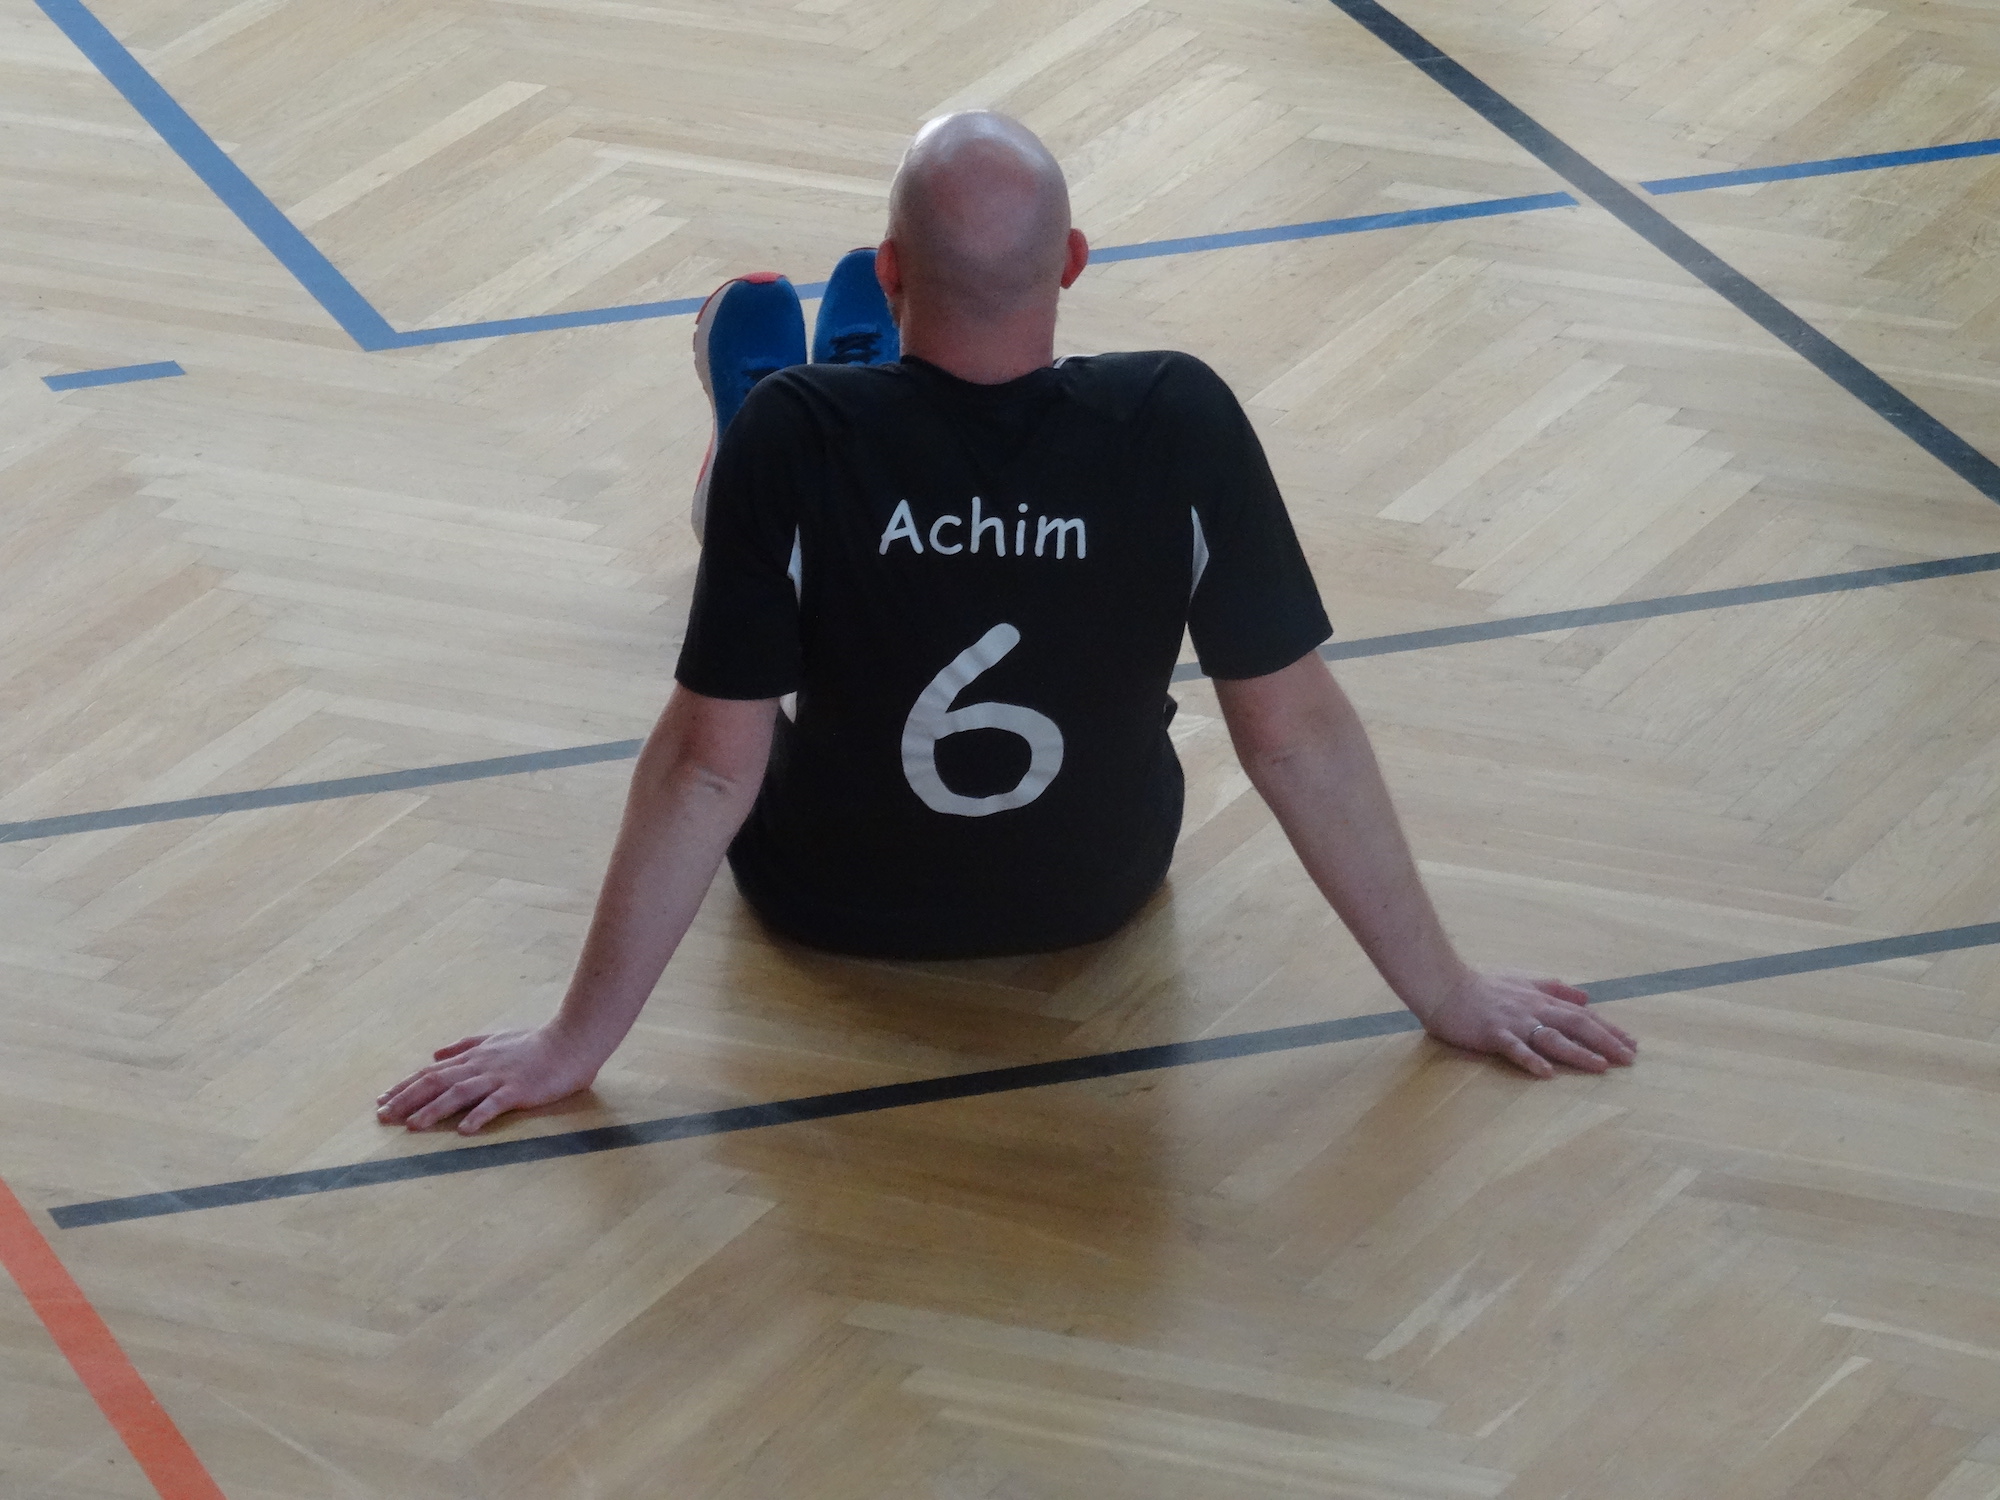 OJT'19 - Volleyball und Achiiiiim